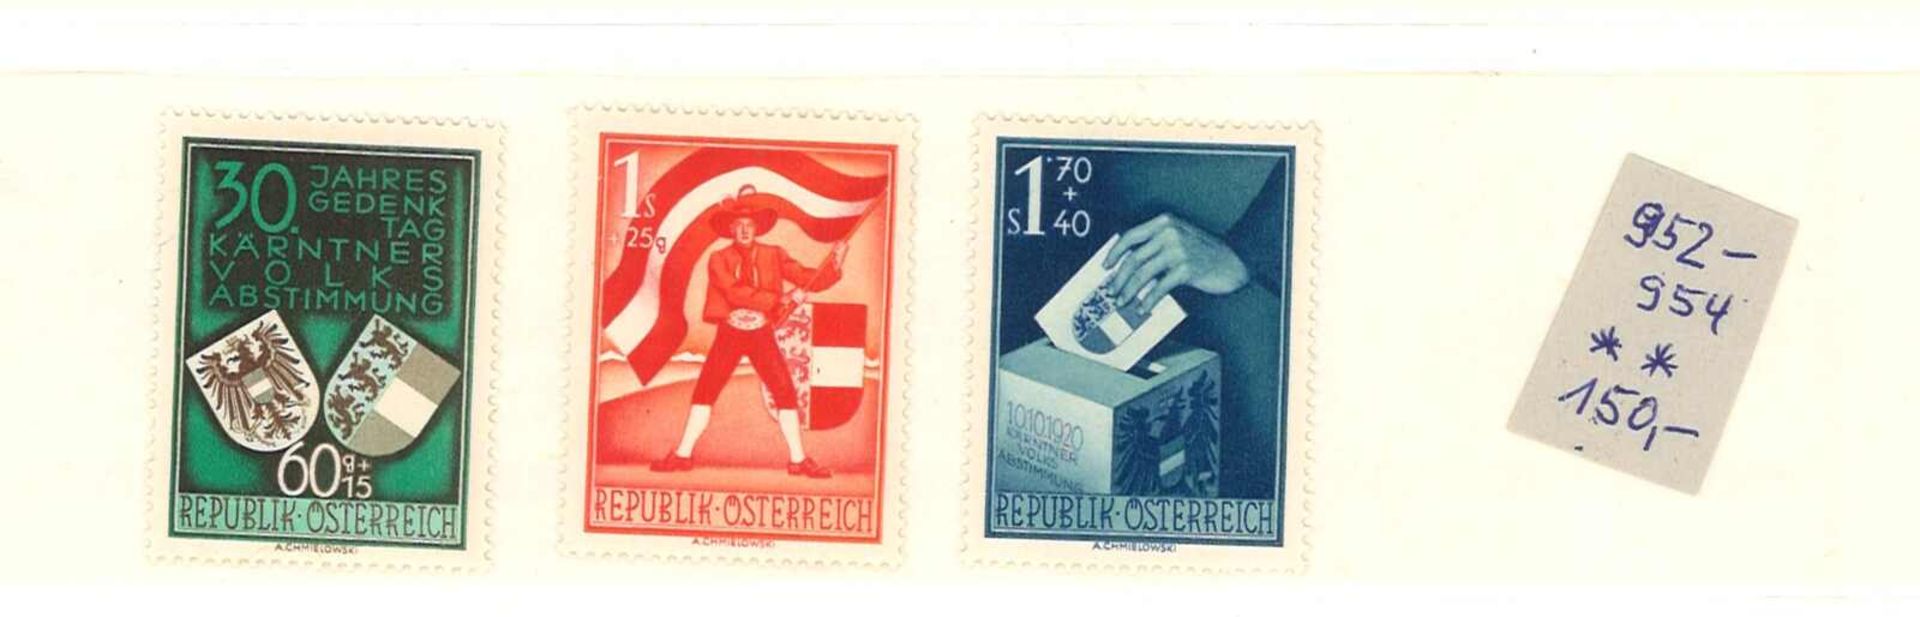 Österreich, 30. Jahrestag der Volksabstimmung in Kärnten 1950. Postfrisch in einwandfreiem